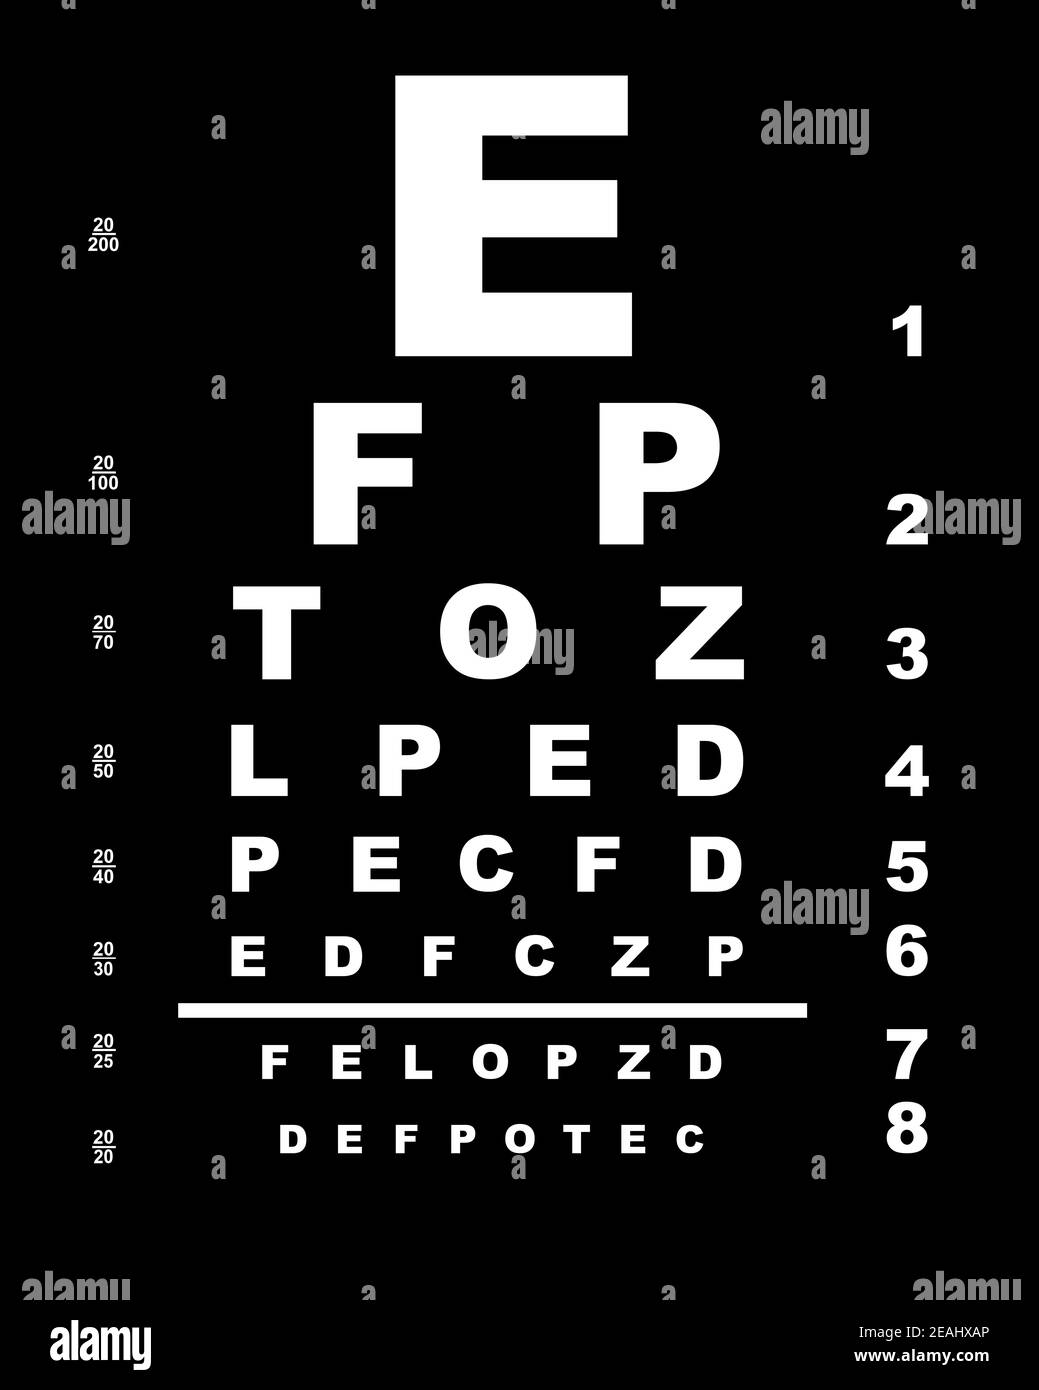 https://c8.alamy.com/comp/2EAHXAP/eye-test-chart-2EAHXAP.jpg